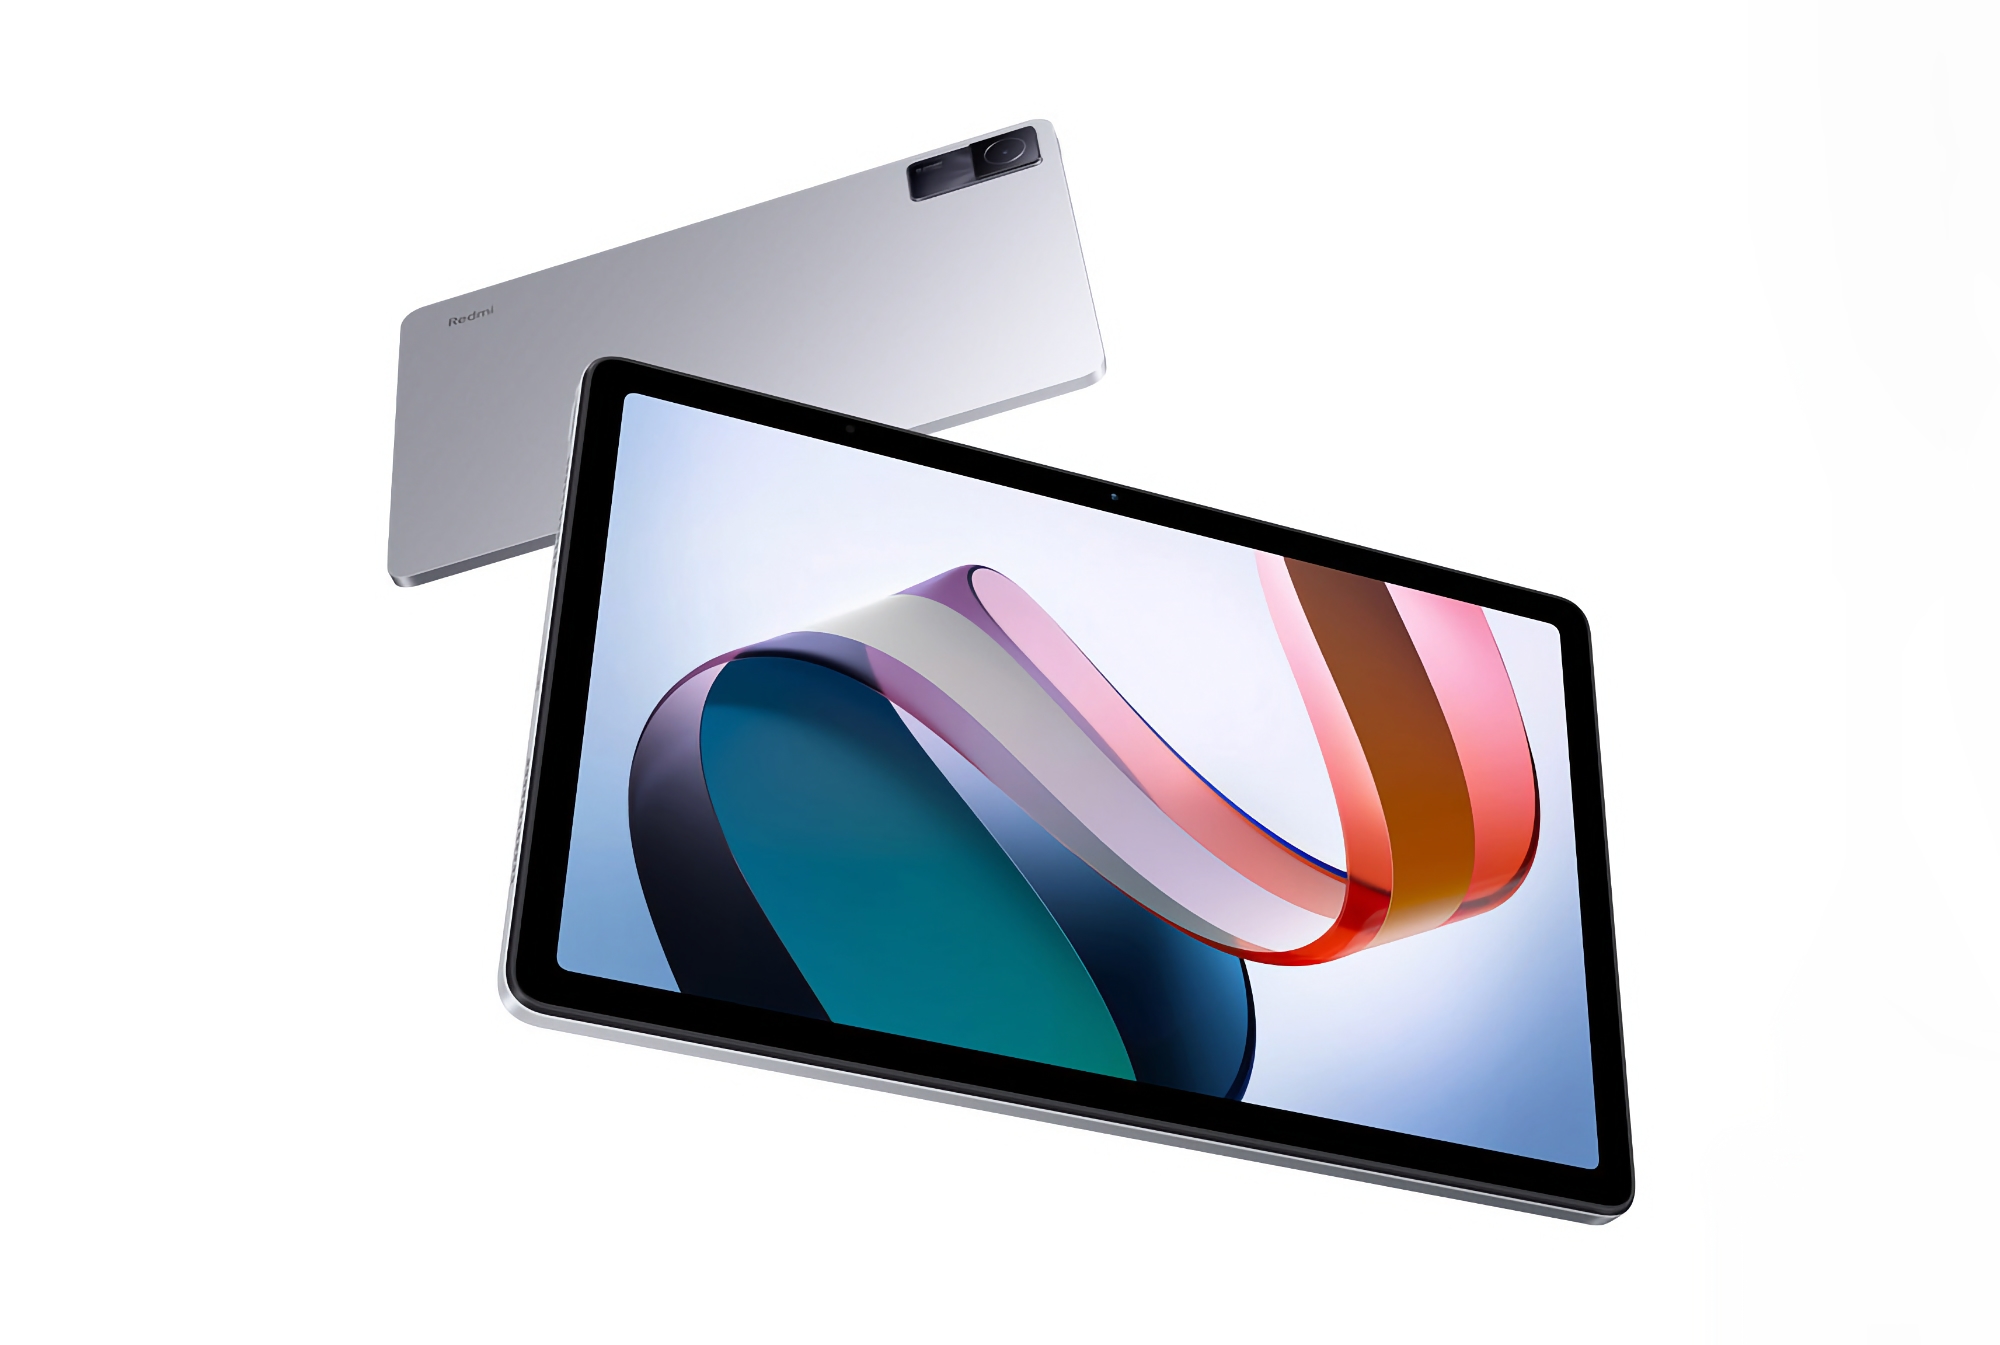 Wyświetlacz LCD 90 Hz, układ Snapdragon 680 i podwójne kamery: specyfikacja tabletu Redmi Pad 2 pojawiła się w sieci